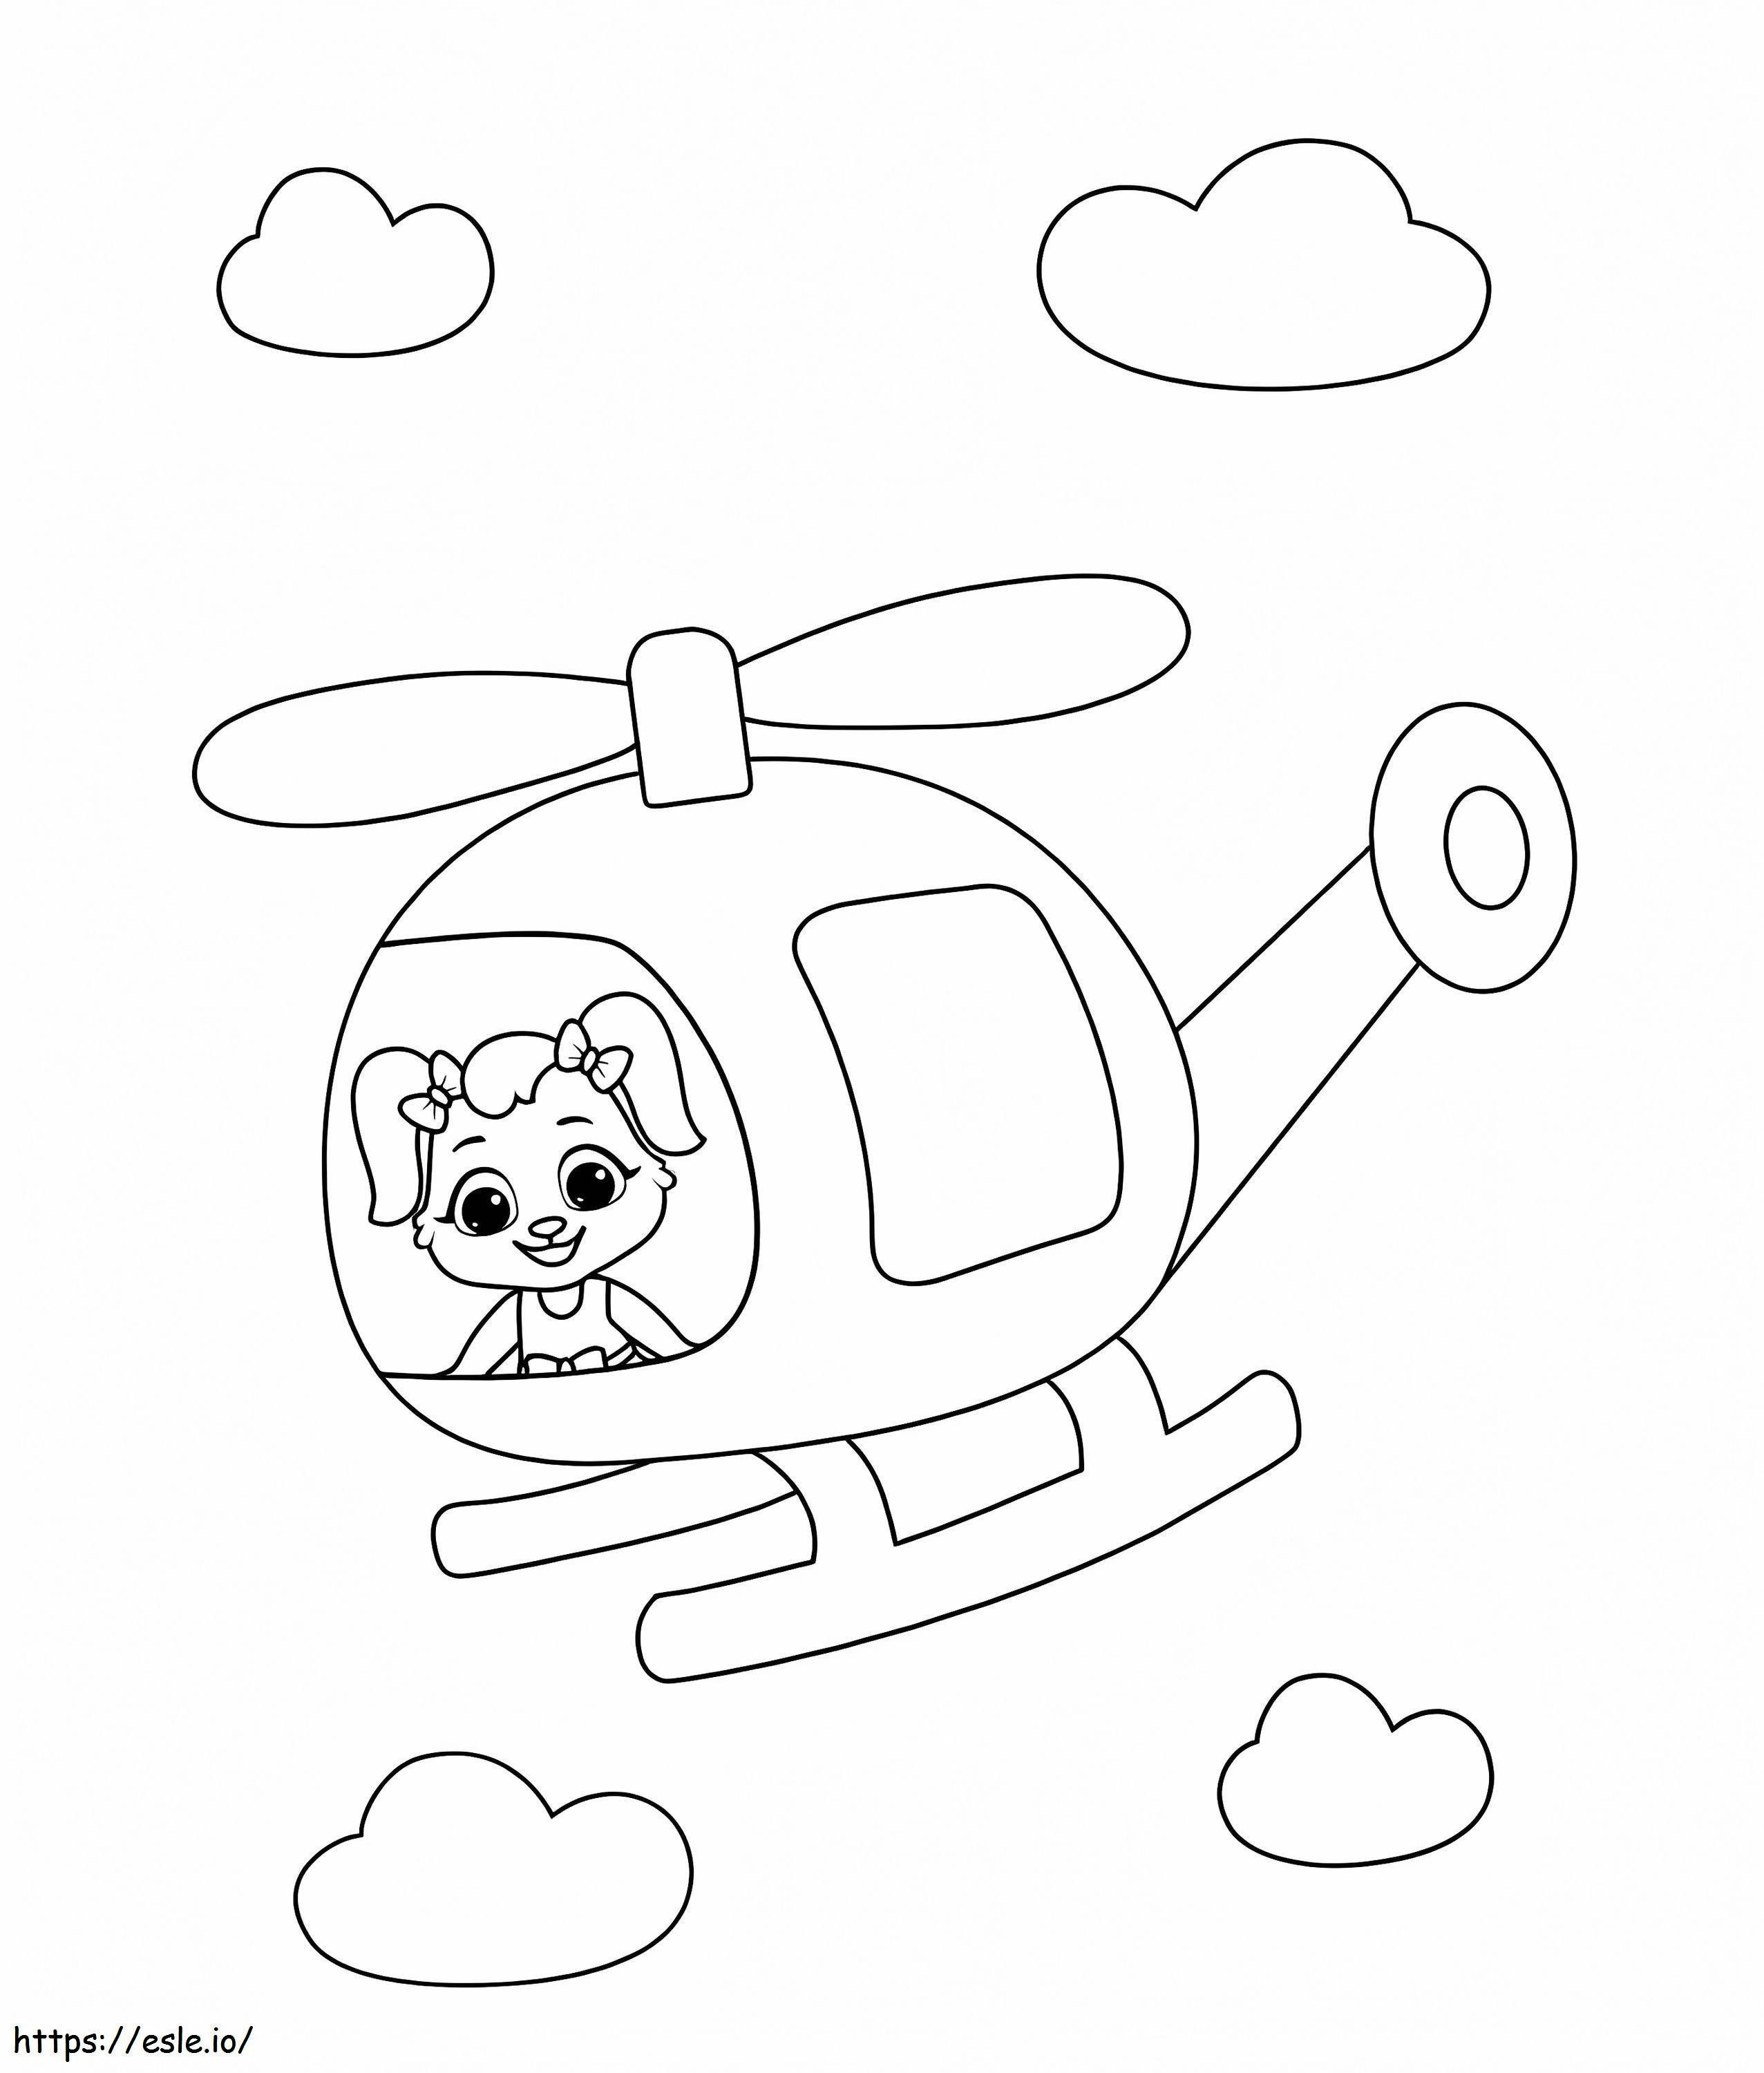 Hund in einem Hubschrauber ausmalbilder